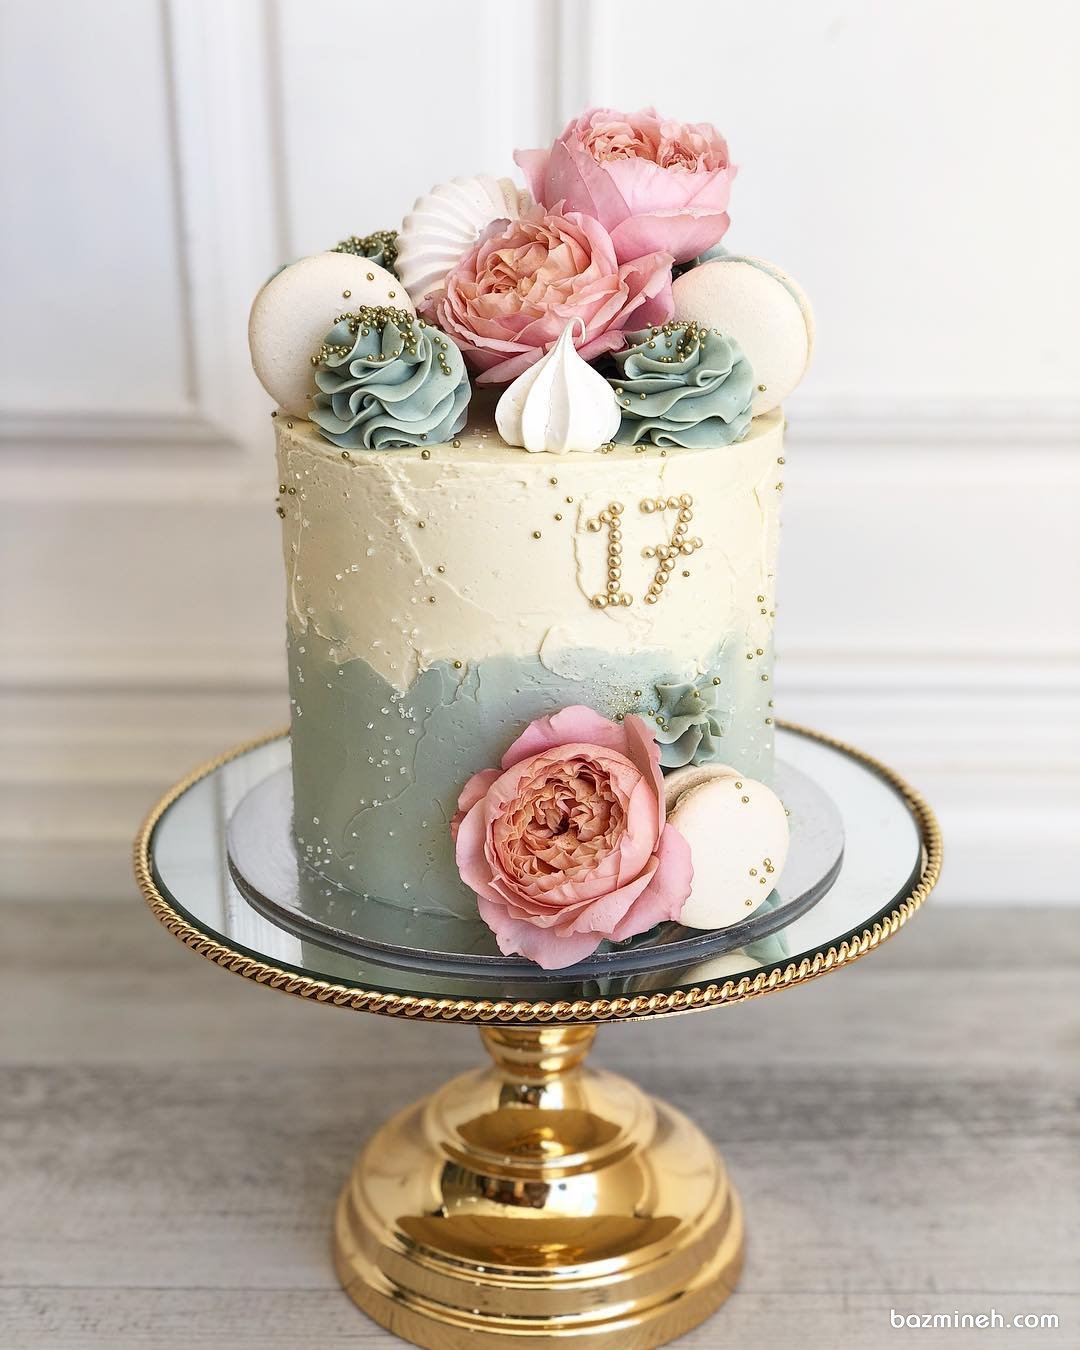 مینی کیک فانتزی جشن تولد نوجوان با تم سفید صورتی آبی تزیین شده با گل های طبیعی و ماکارون